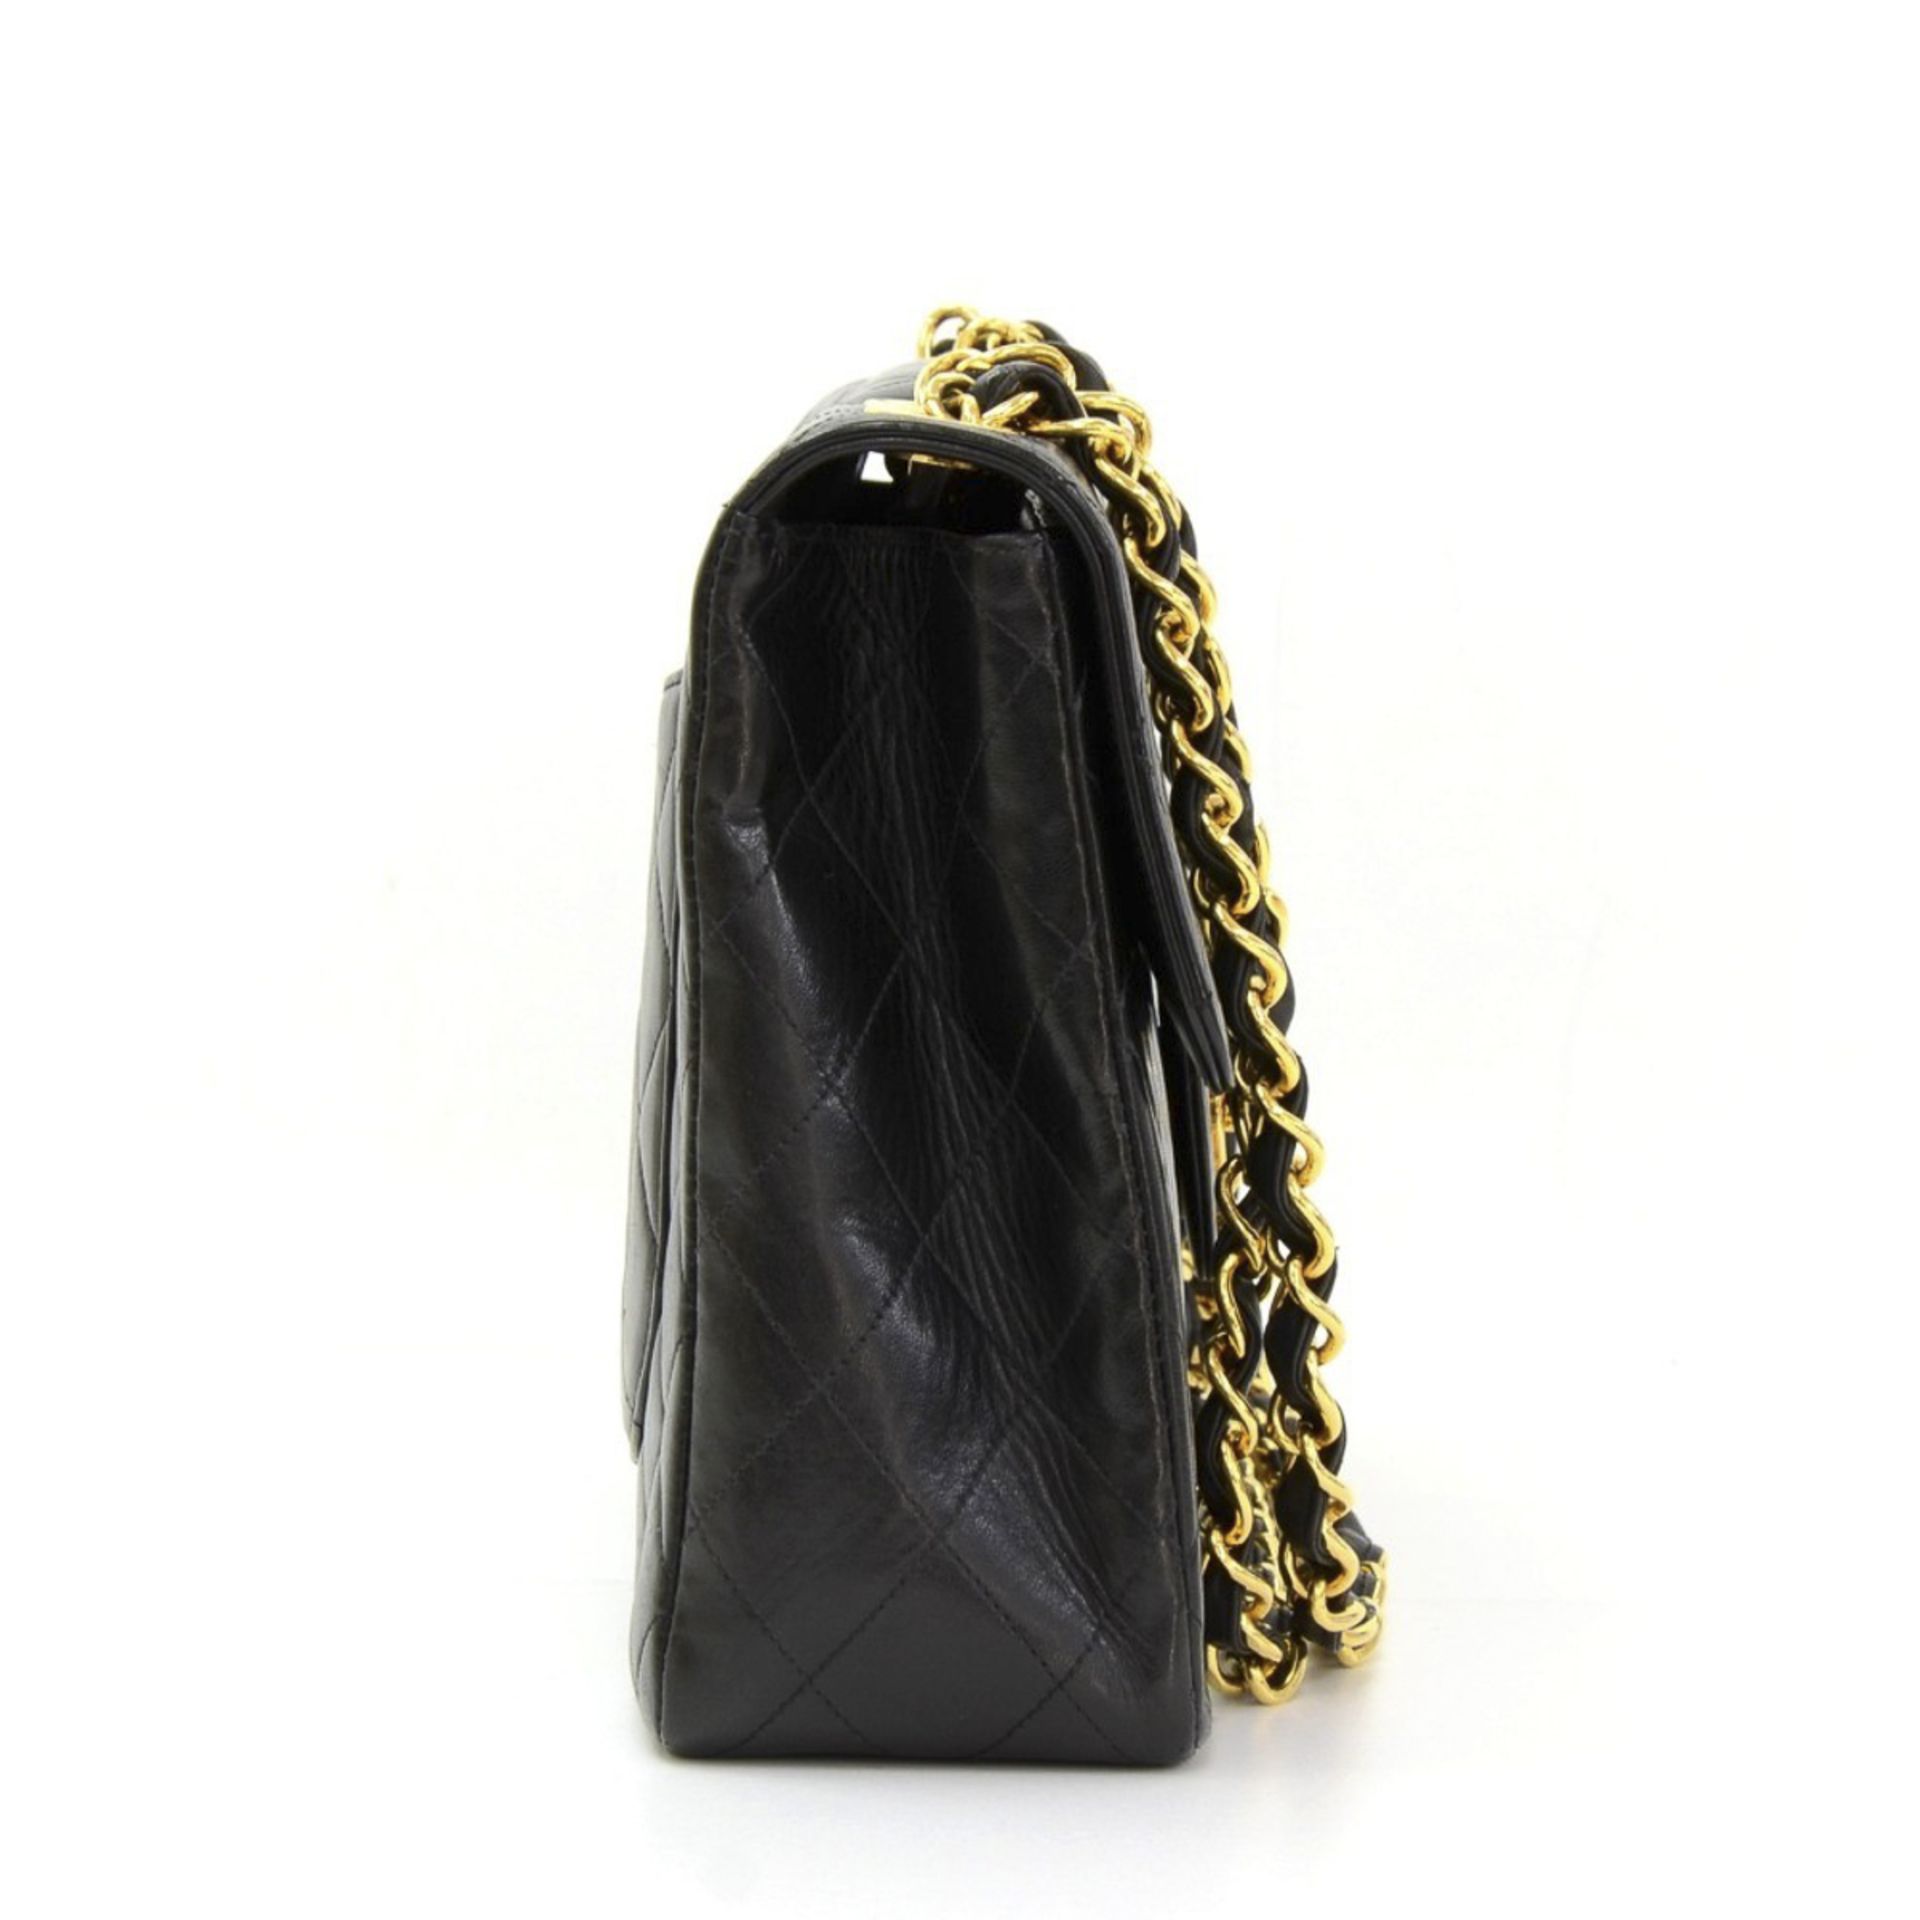 Chanel, Jumbo XL Flap Bag - Image 4 of 12